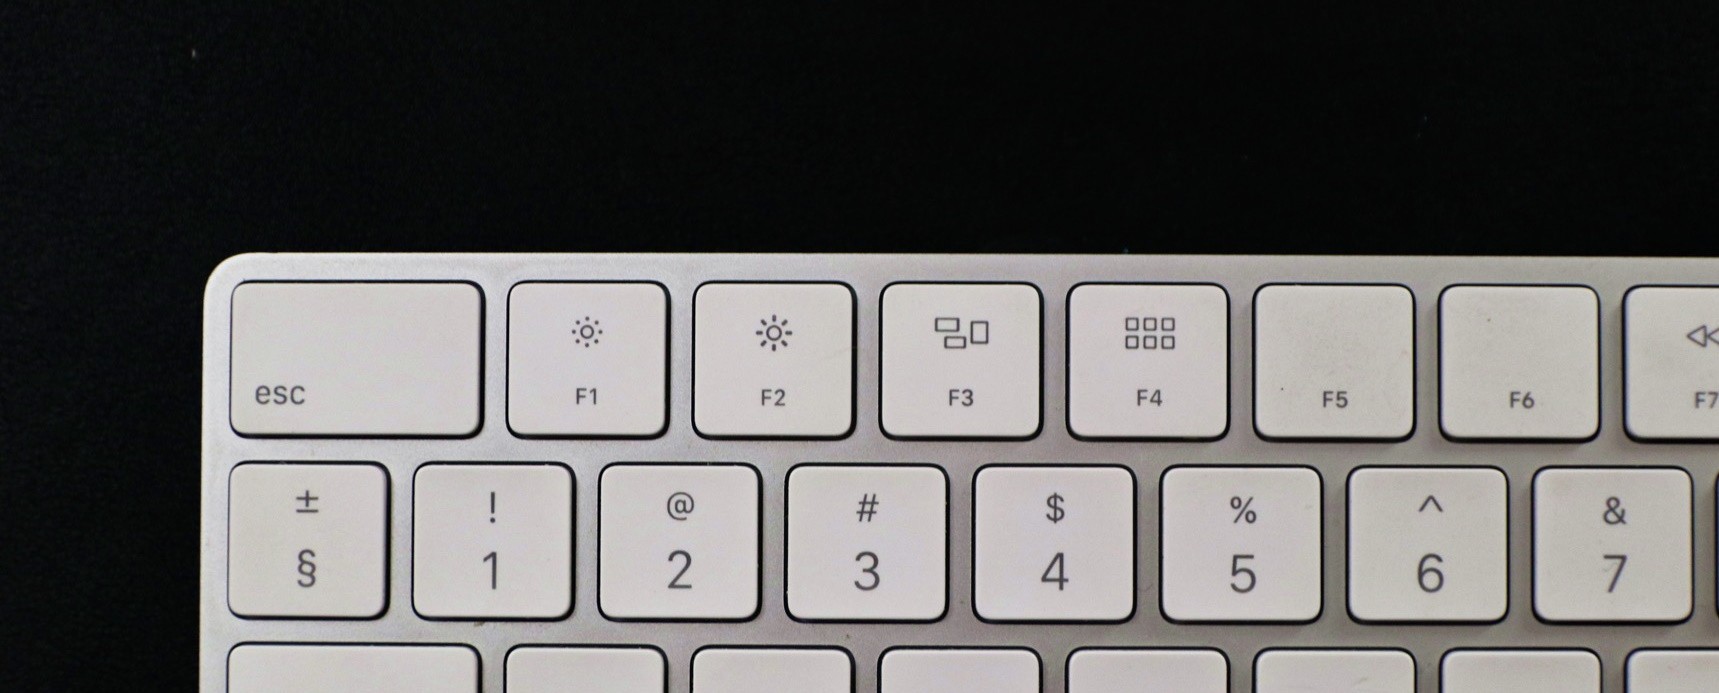 mac control keys